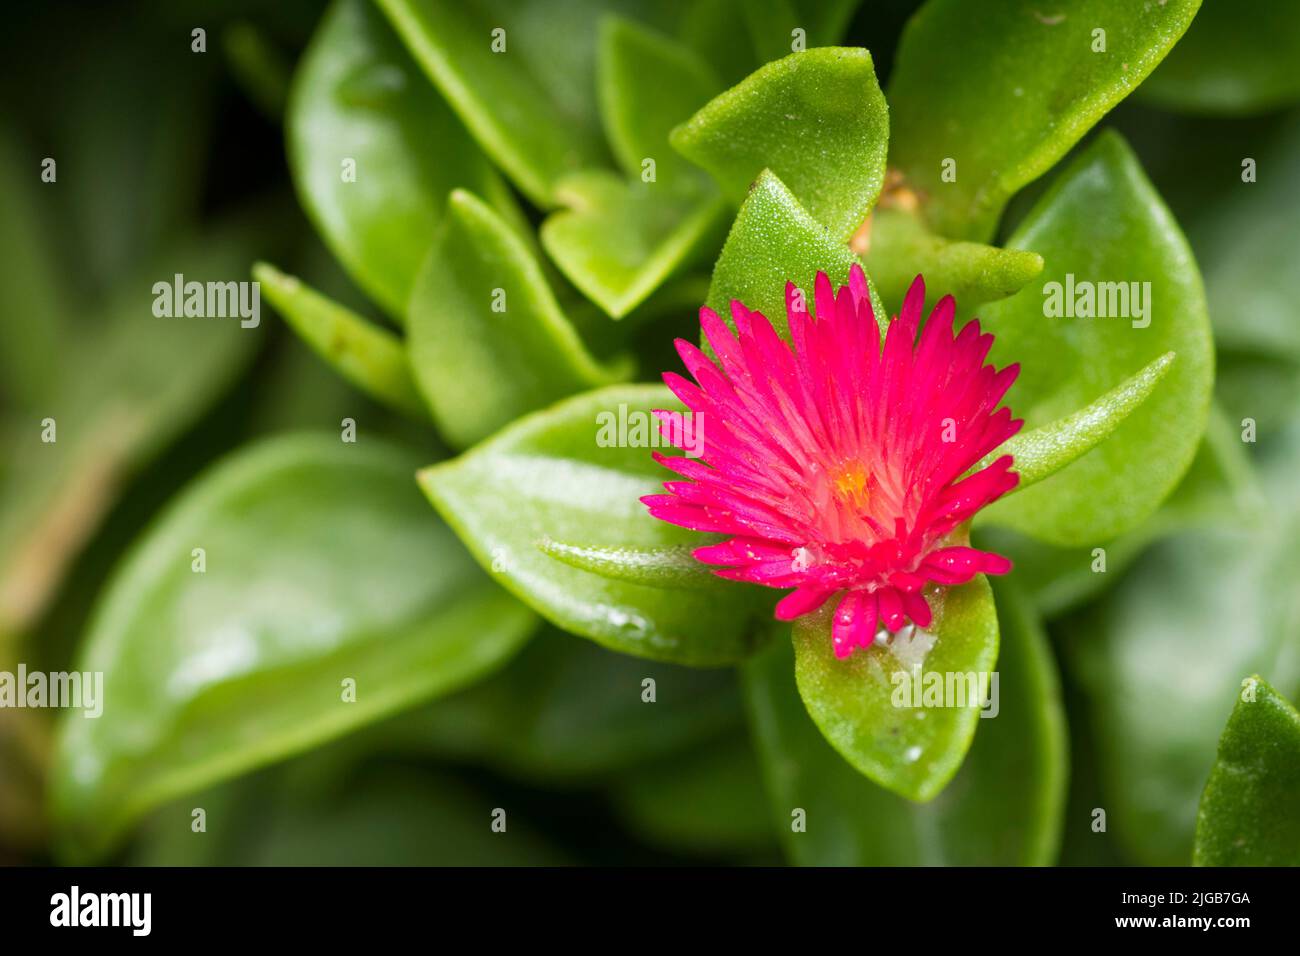 Baby Sun Rose flower in bloom, Mesembryanthemum Cordifolium Stock Photo